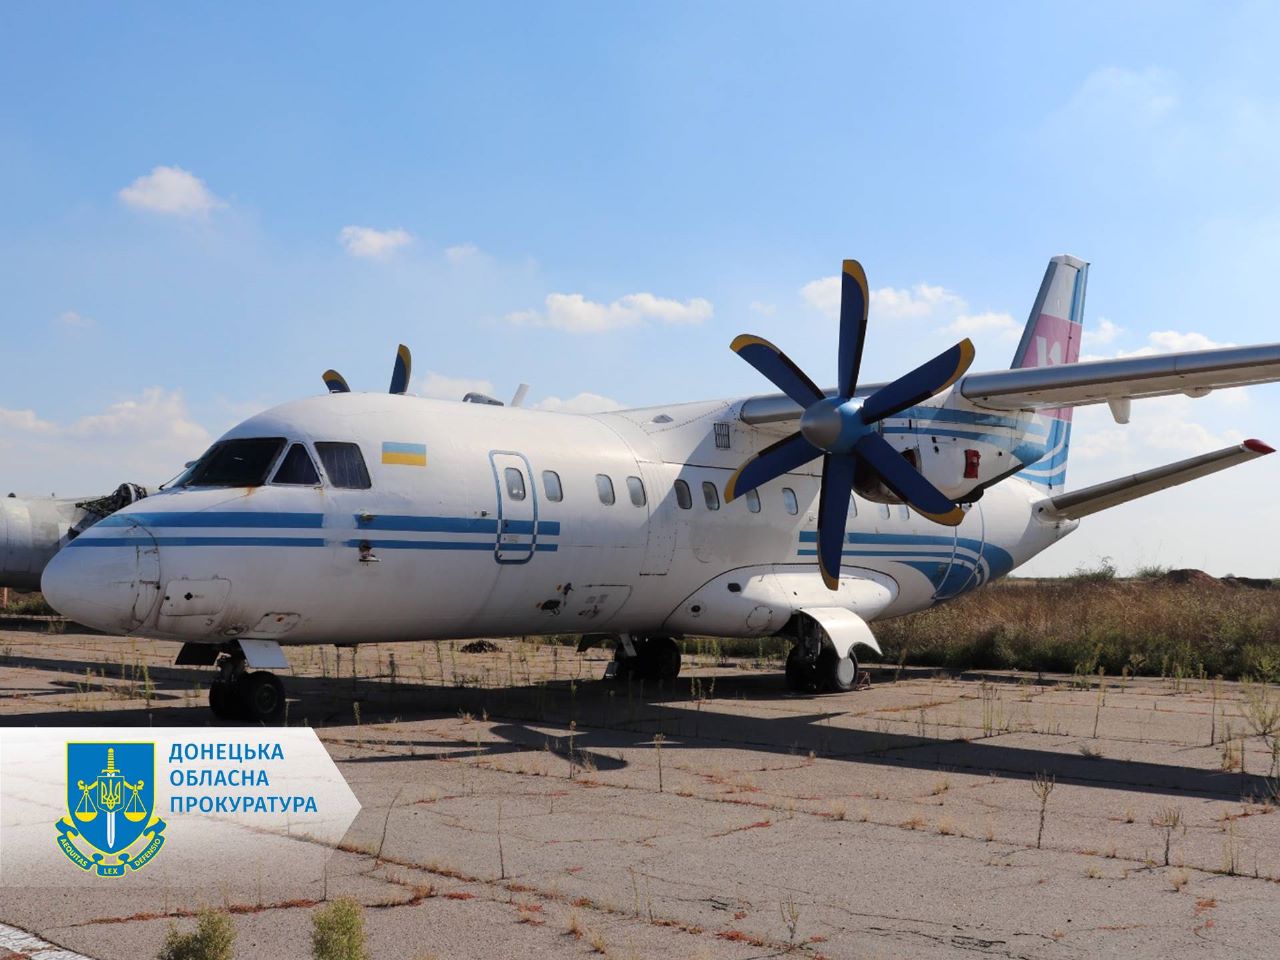 Арештовано літак вартістю 20 млн грн – на Донеччині прокурори ініціювали передачу повітряного судна в управління АРМА